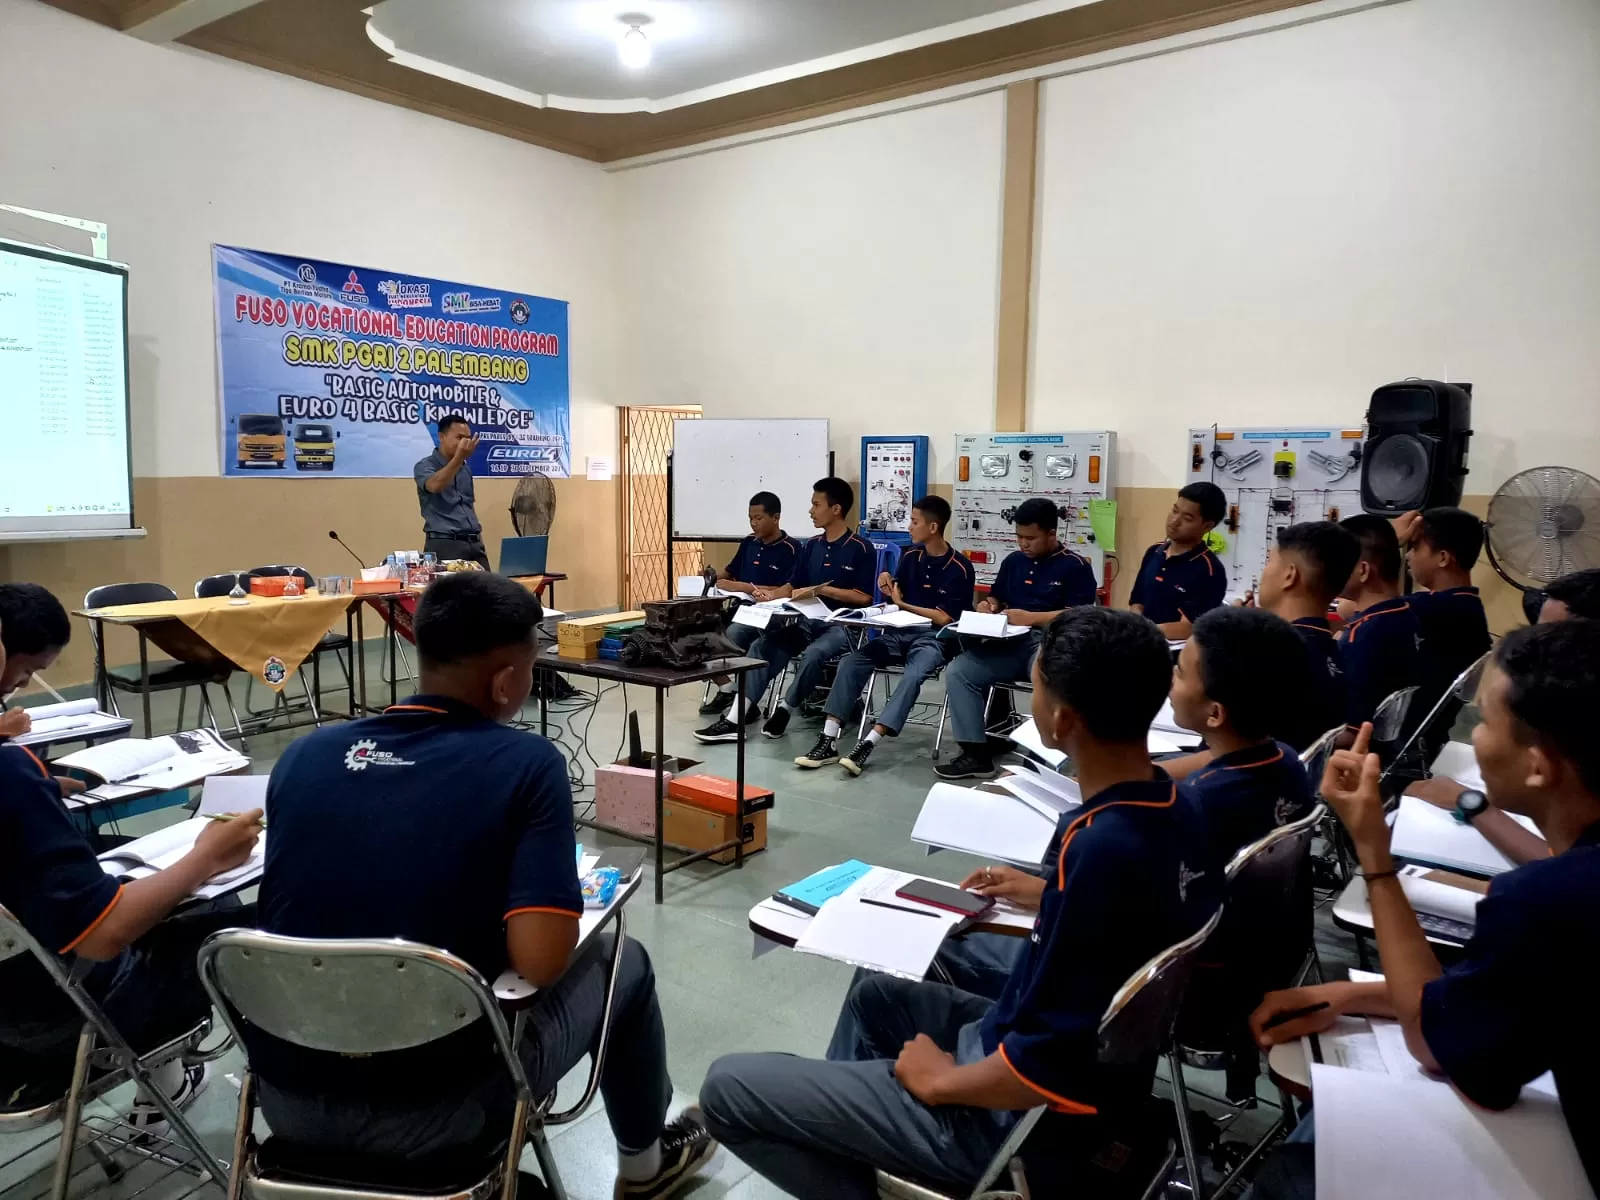 Dukung pendidikan kejuruan di Indonesia, KTB berikan edukasi bagi guru dan siswa SMK otomotif